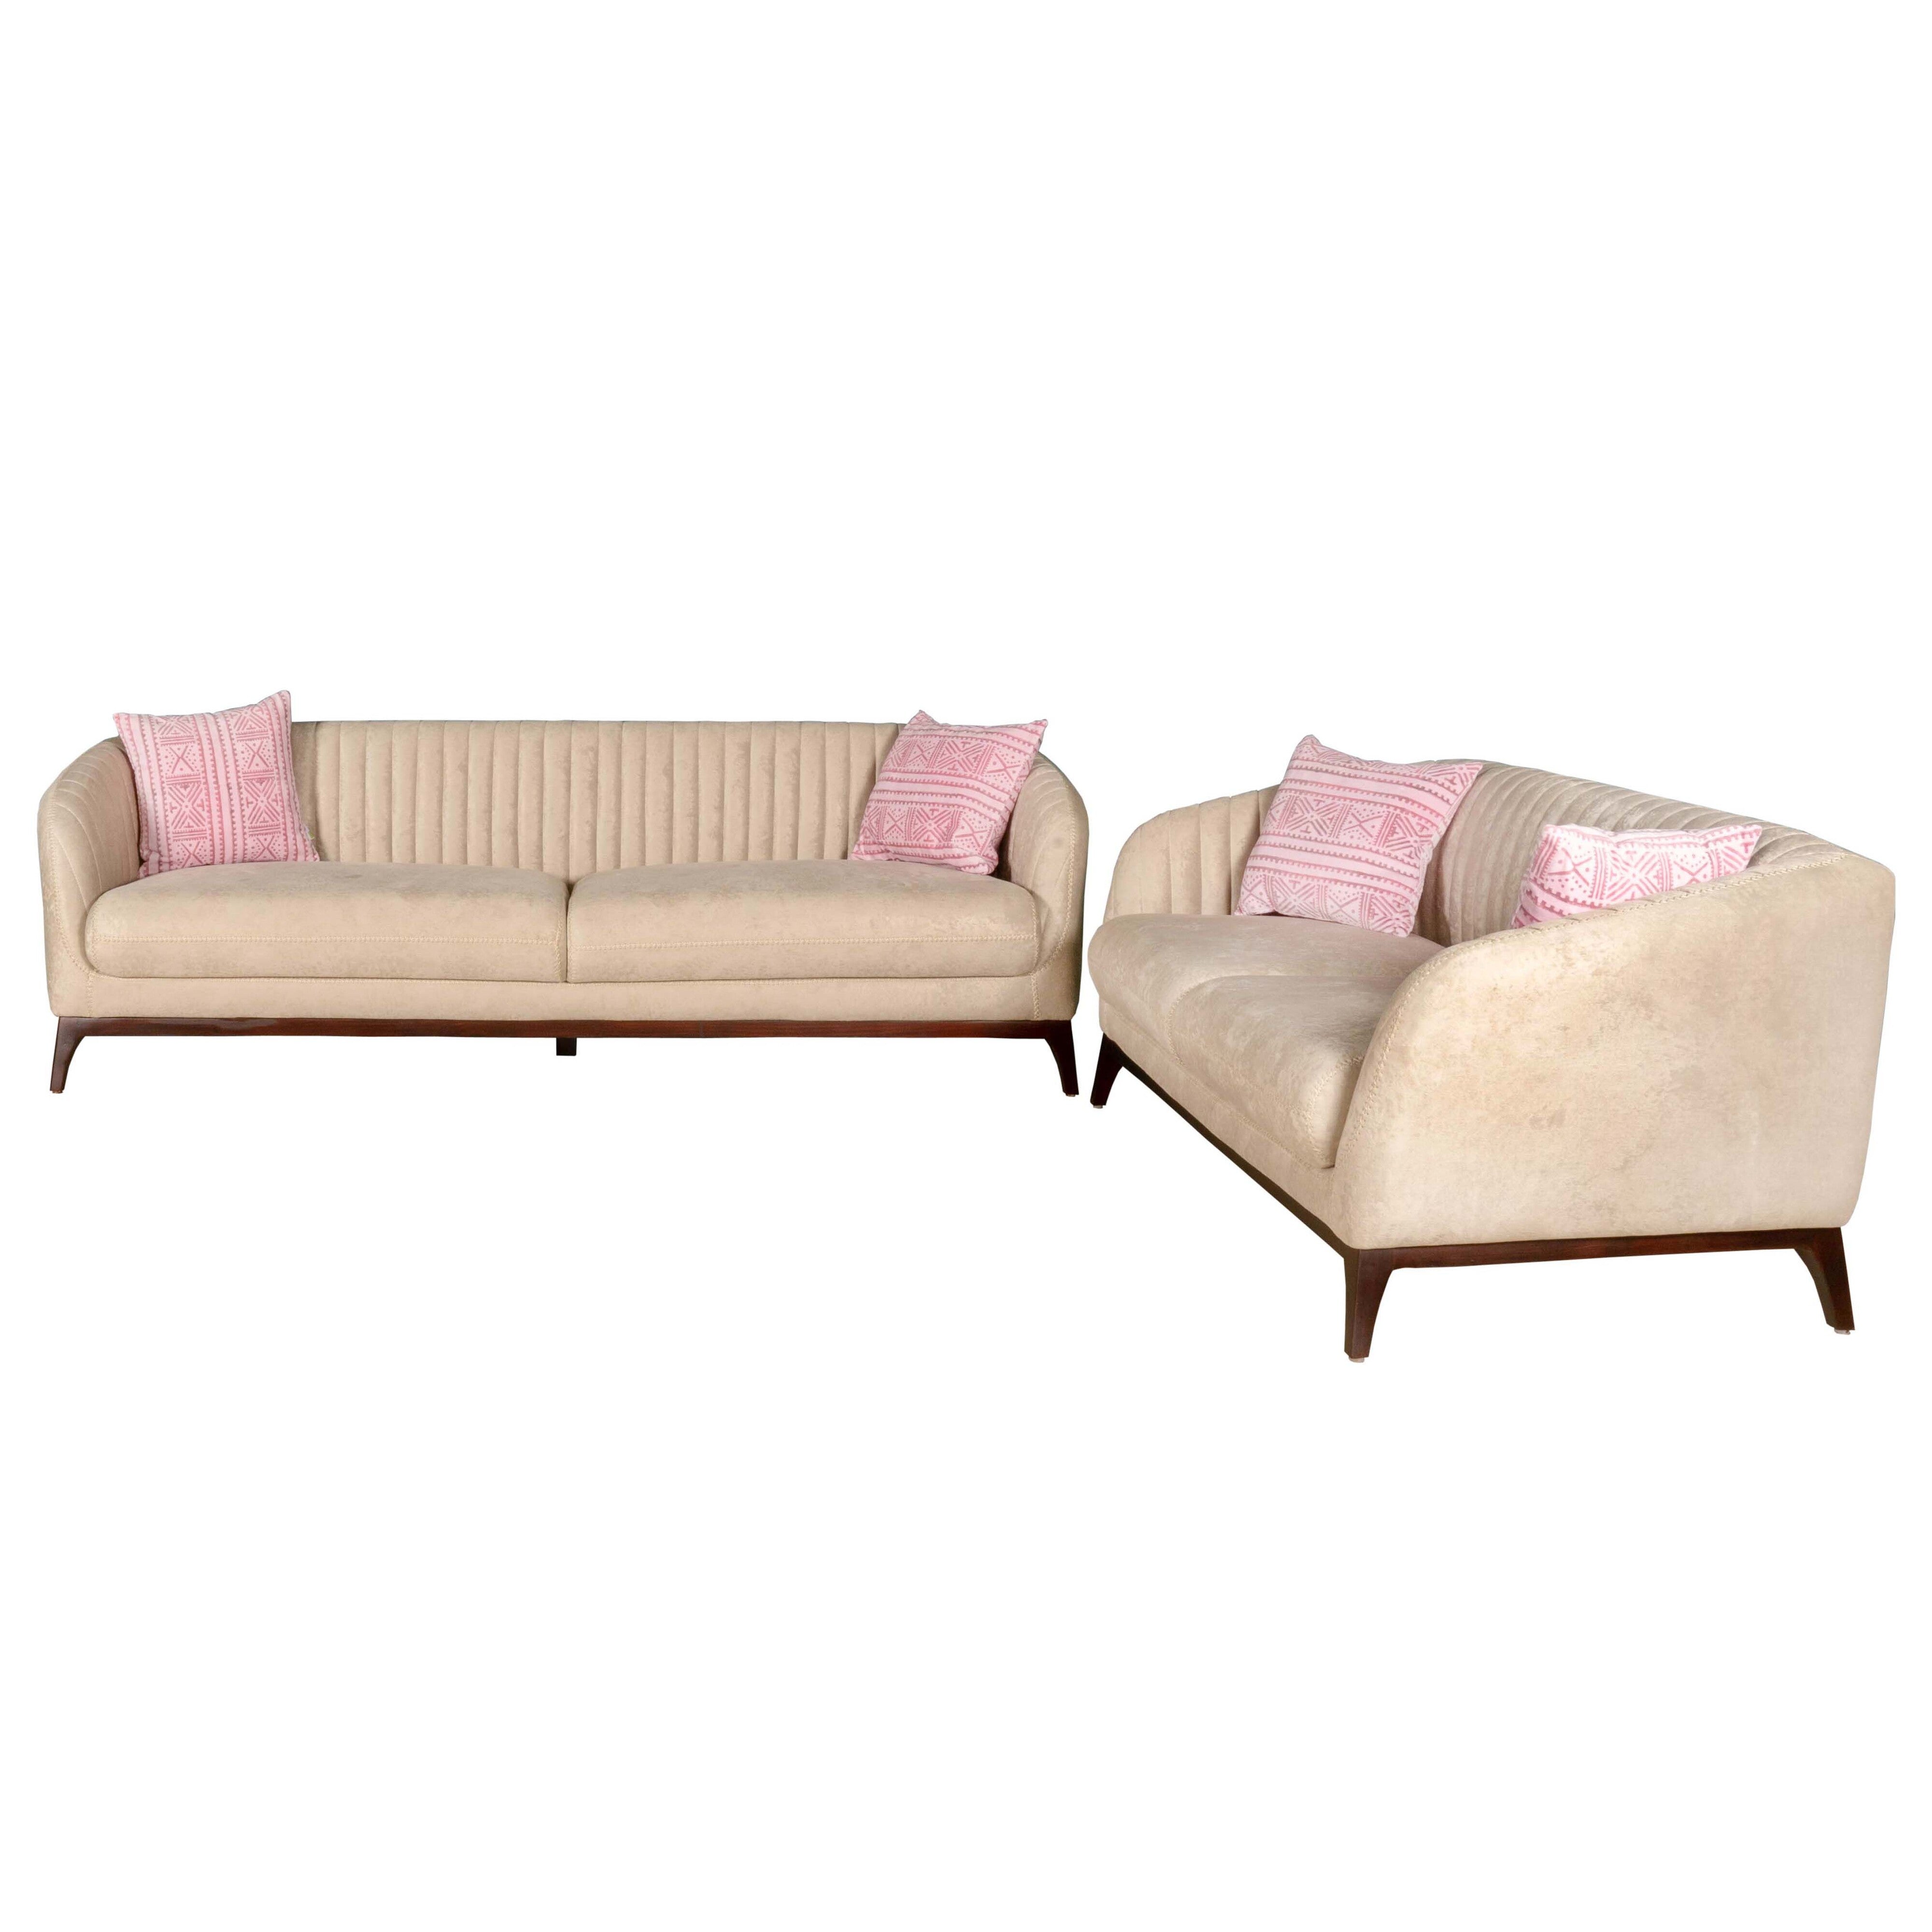 ARENA Truce Cream Sofa